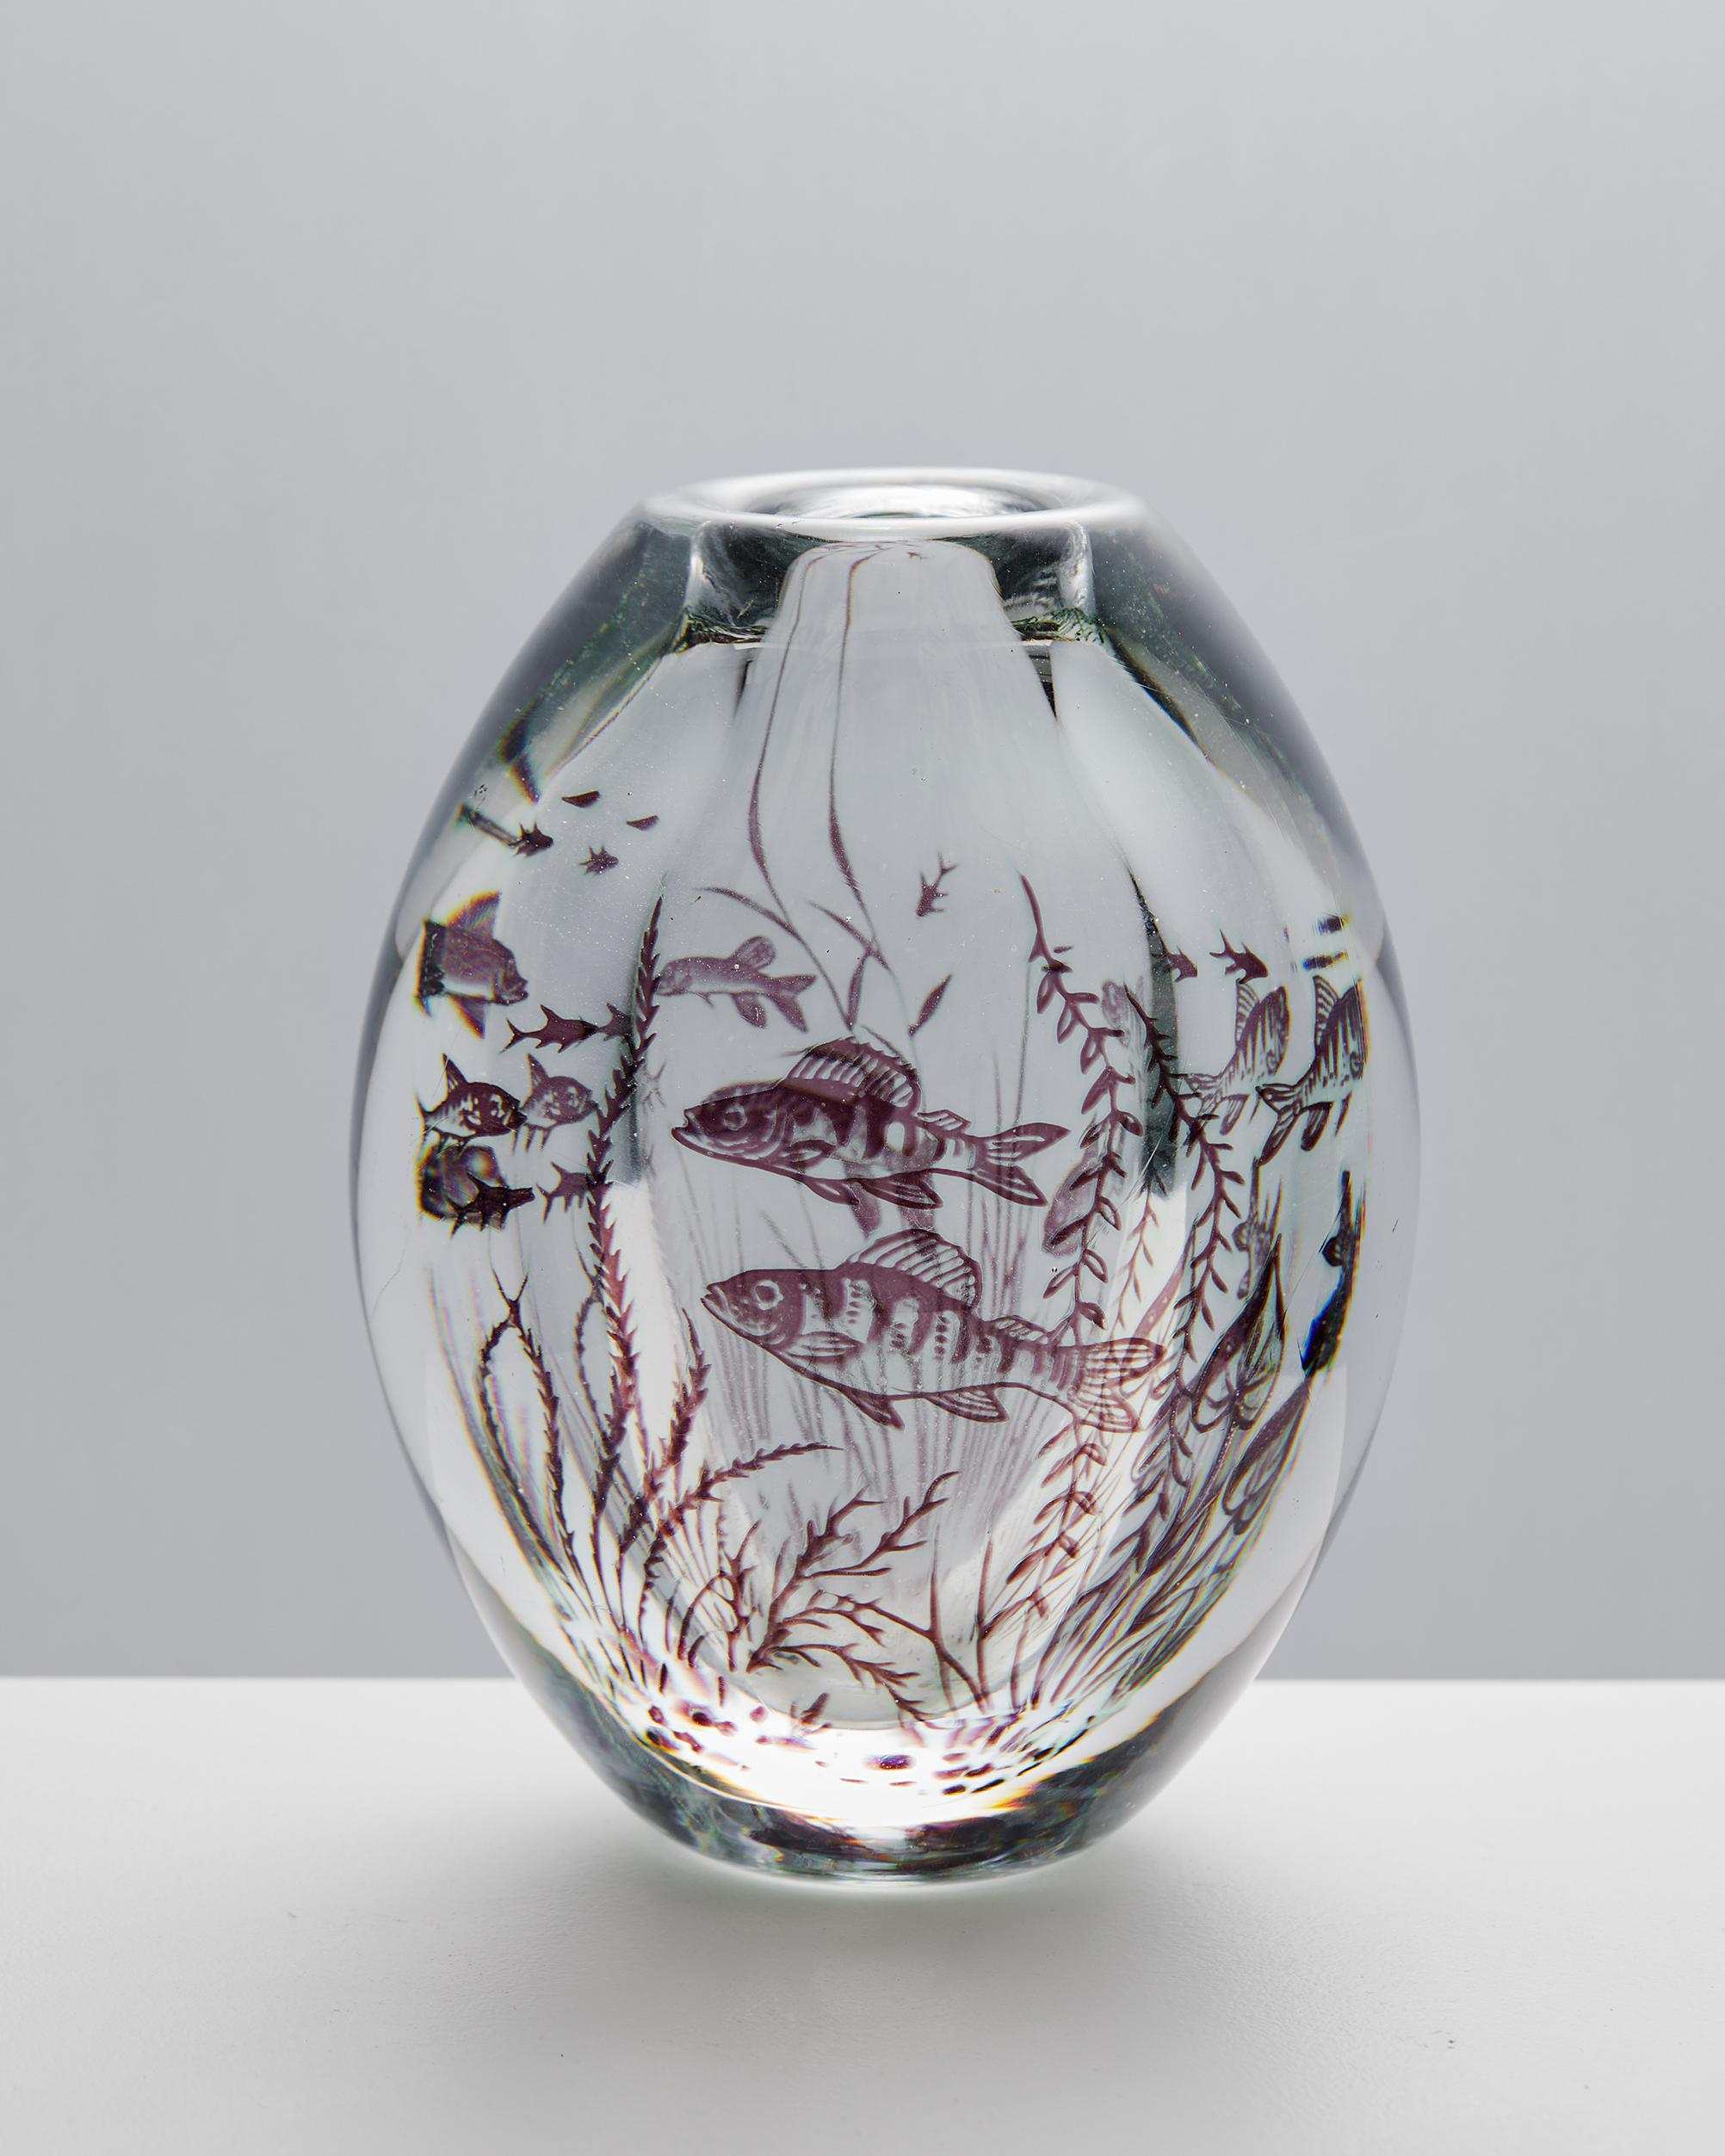 Vase 'Fish Graal', entworfen von Edward Hald für Orrefors,
Schweden, 1949.

Glas.

Unterschrieben.

Abmessungen: 
Höhe: 16 cm / 6 1/4''
Durchmesser: 12 cm / 4 3/4''.

Edward Hald (1883 - 1980) ist einer der bekannten schwedischen Glaskünstler, die